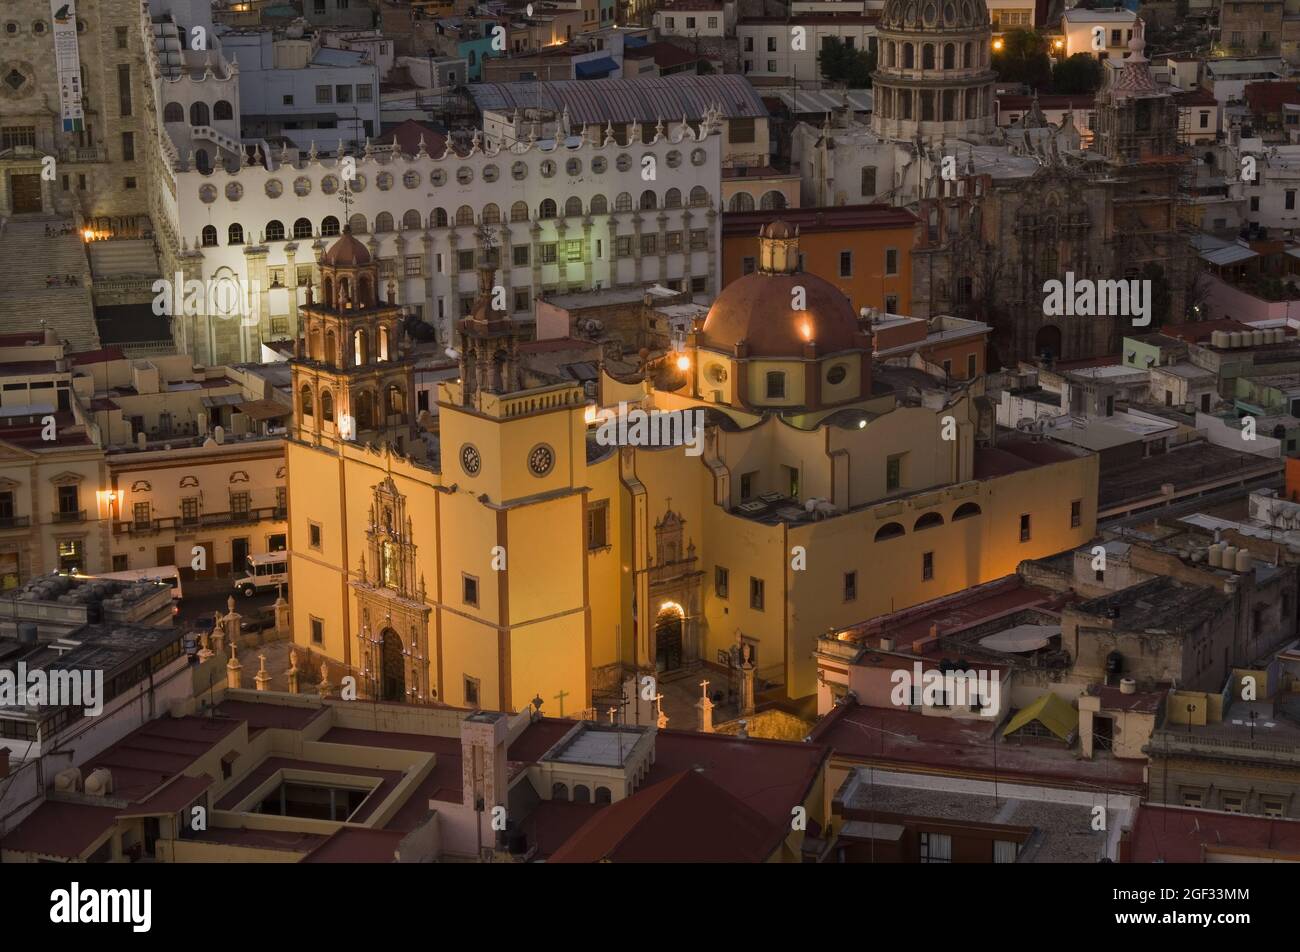 Historic town of Guanajuato, Cathedral Nuestra Senhora de Guanajuato and the university at night, Province of Guanajuato, Mexico Stock Photo